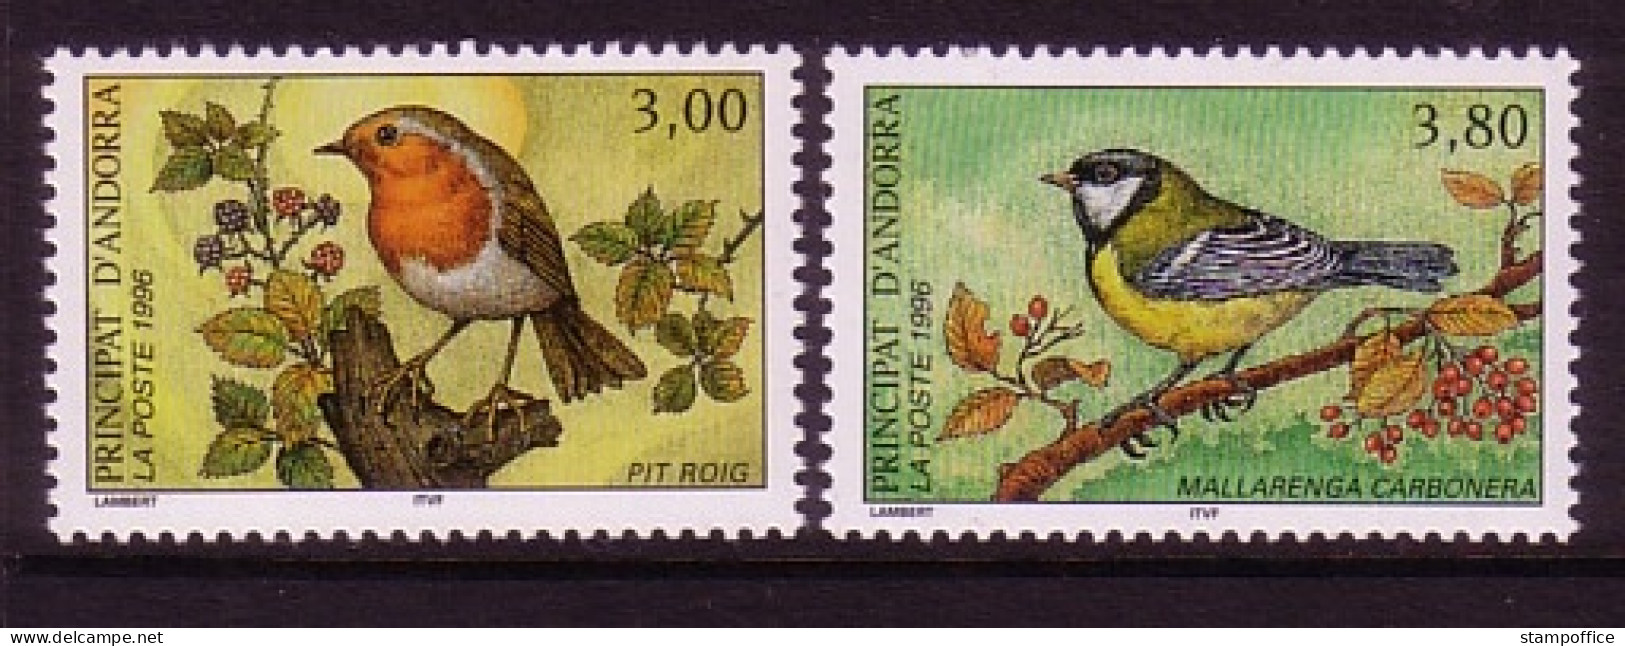 ANDORRA FRANZÖSISCH MI-NR. 491-492 POSTFRISCH(MINT) NATURSCHUTZ 1996 ROTHKEHLCHEN KOHLMEISE - Unused Stamps